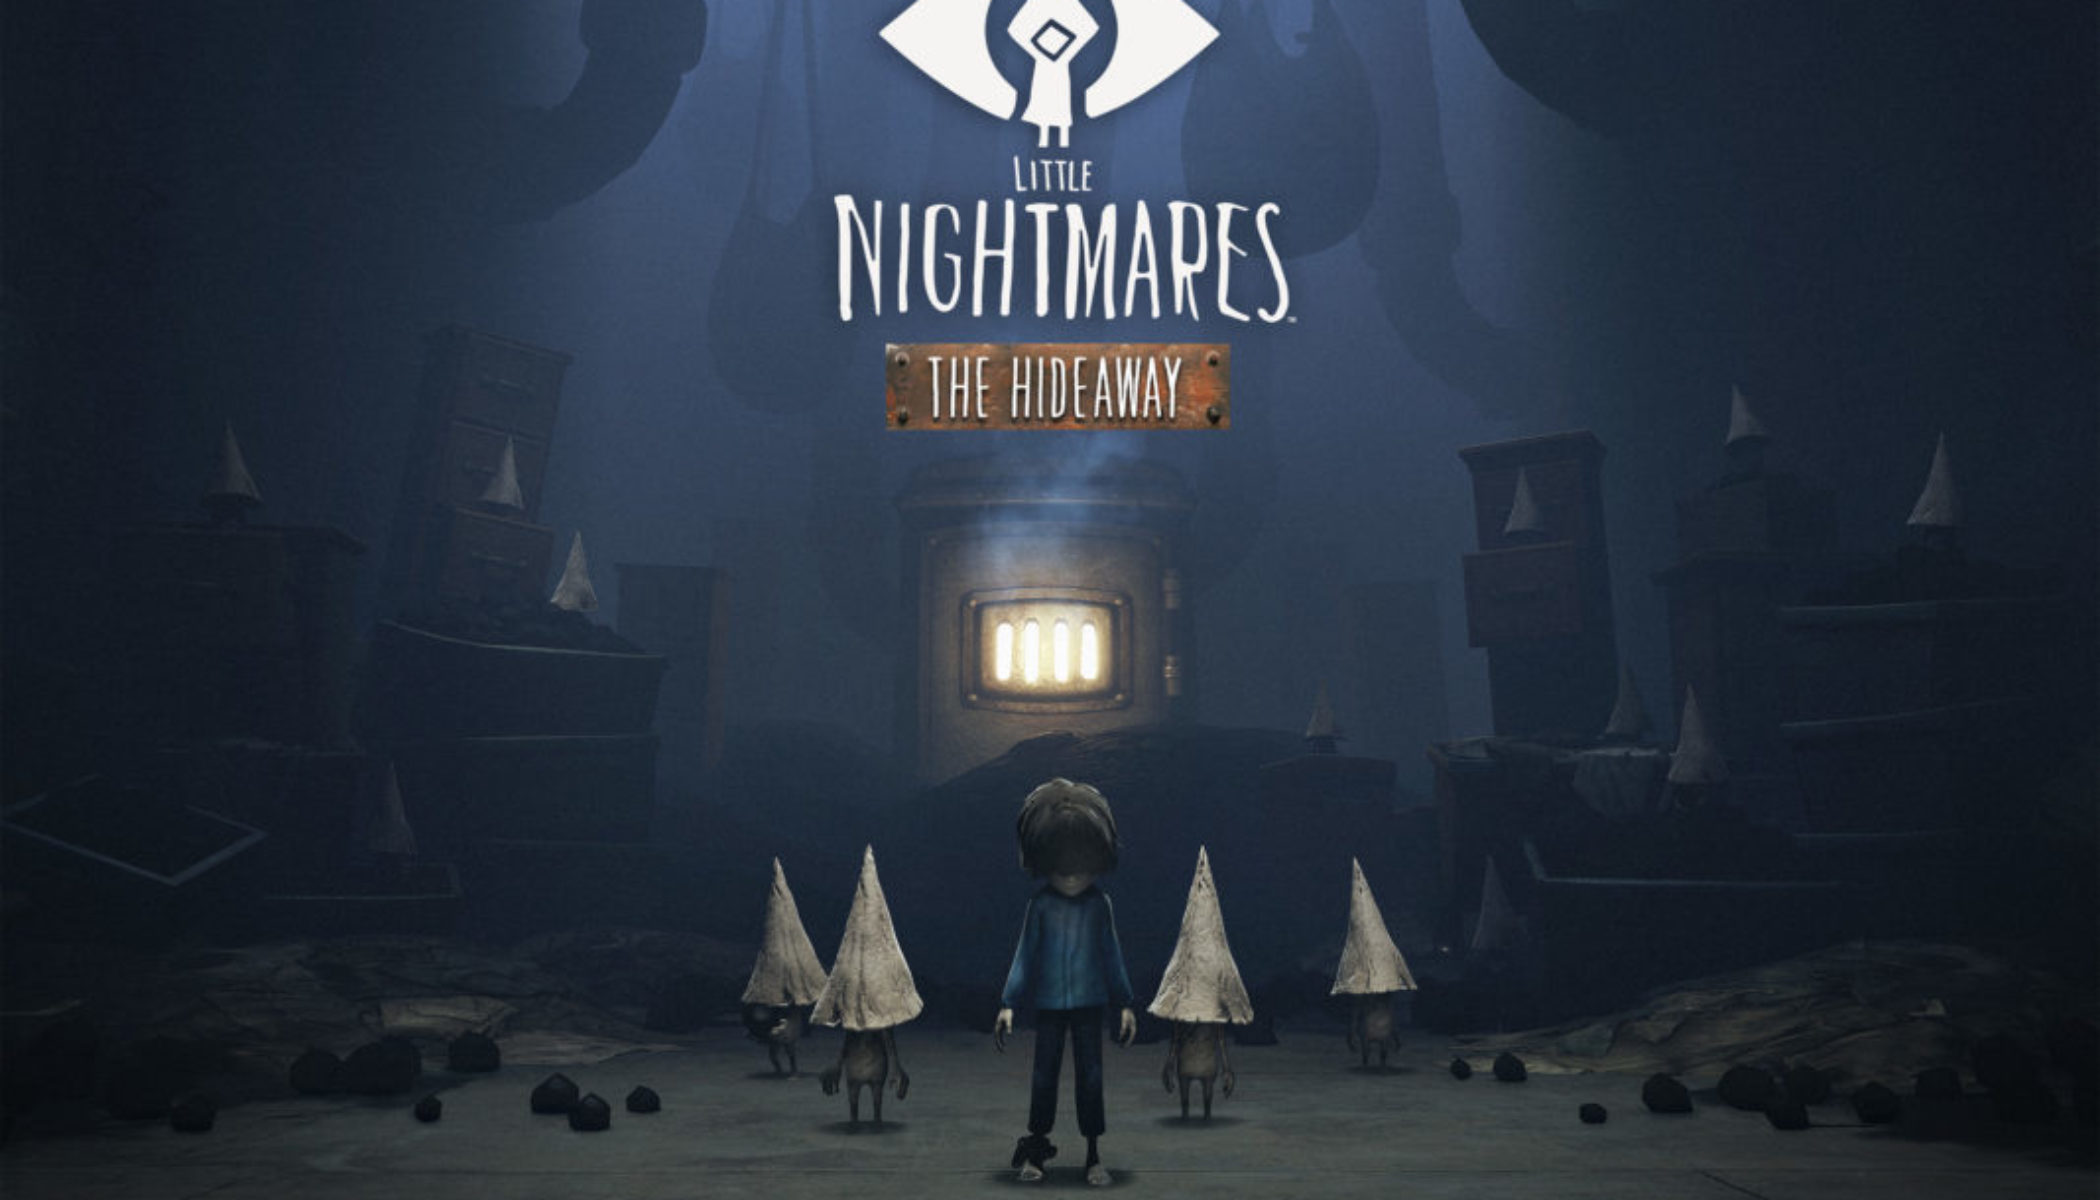 Little Nightmares The Depths DLC no Steam